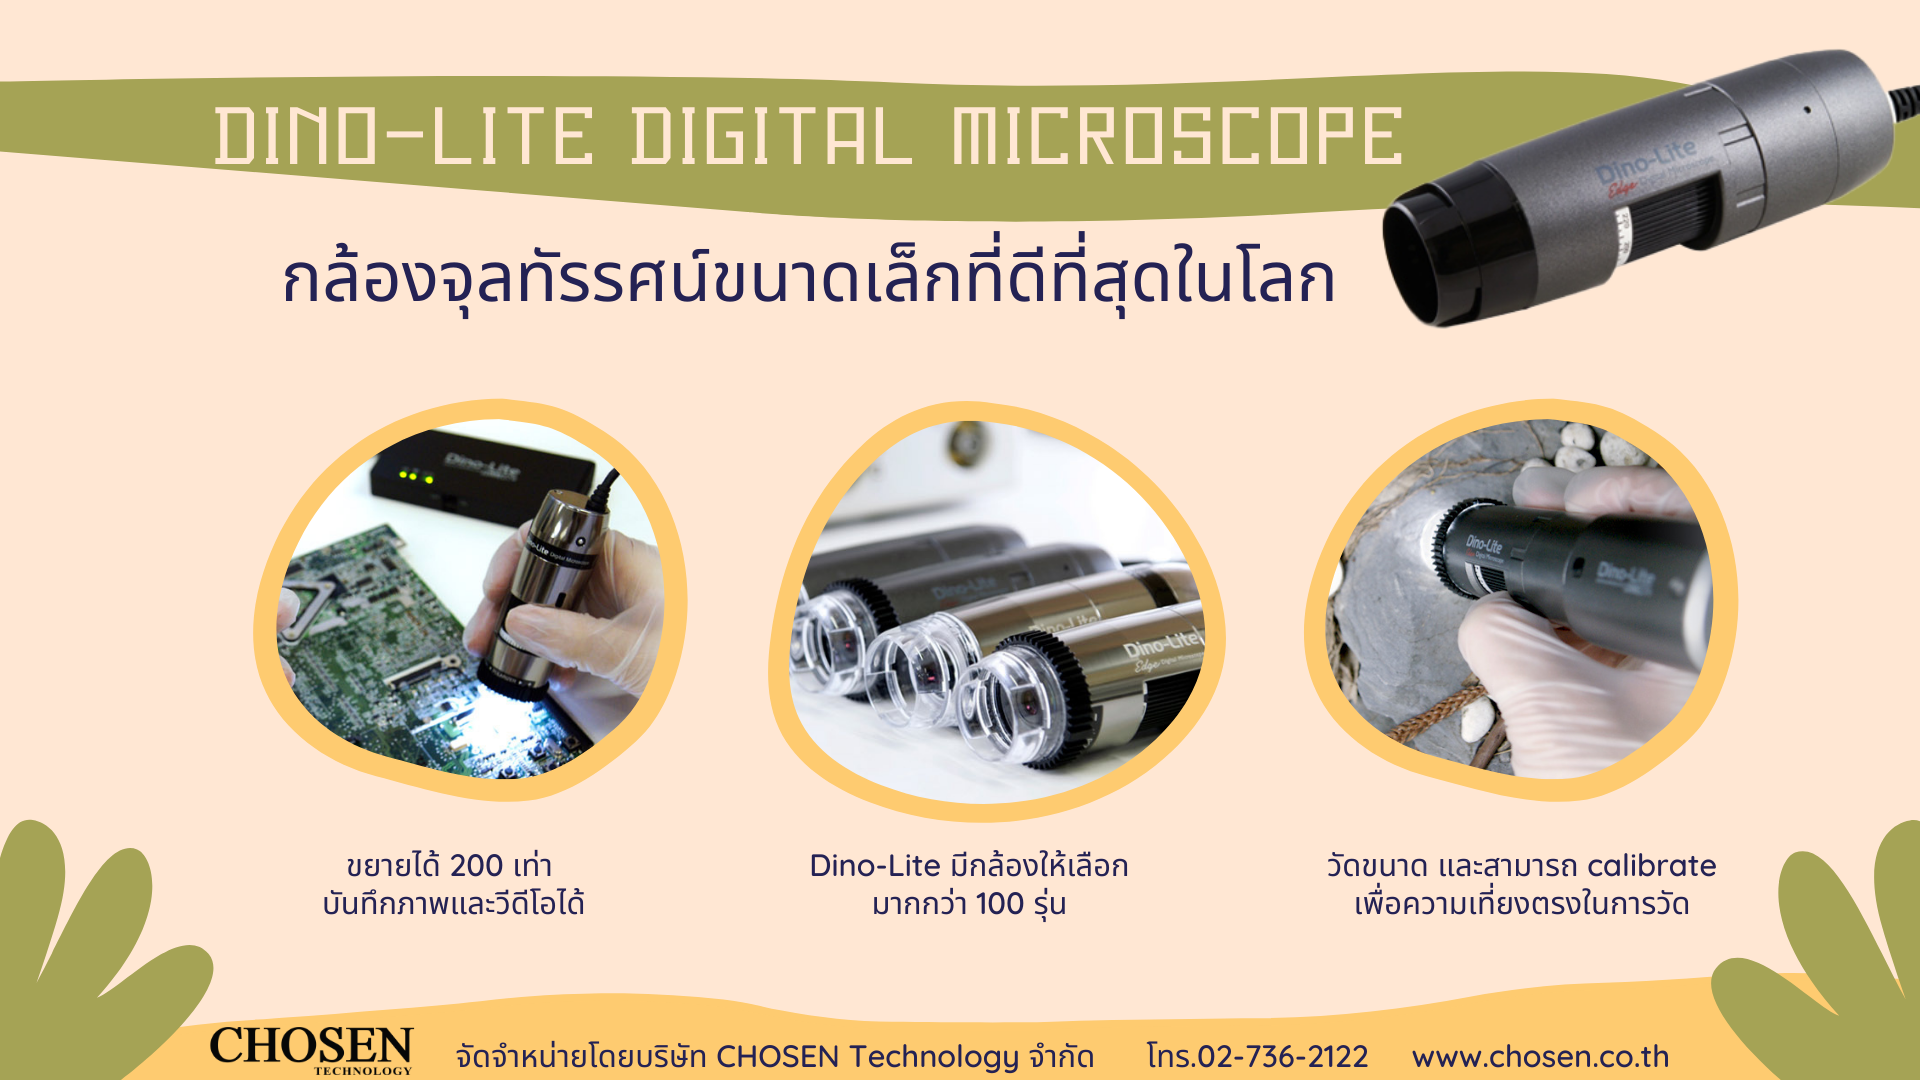 サンコー 500万画素モデルのマイクロスコープ Dino-Lite Premier 500M